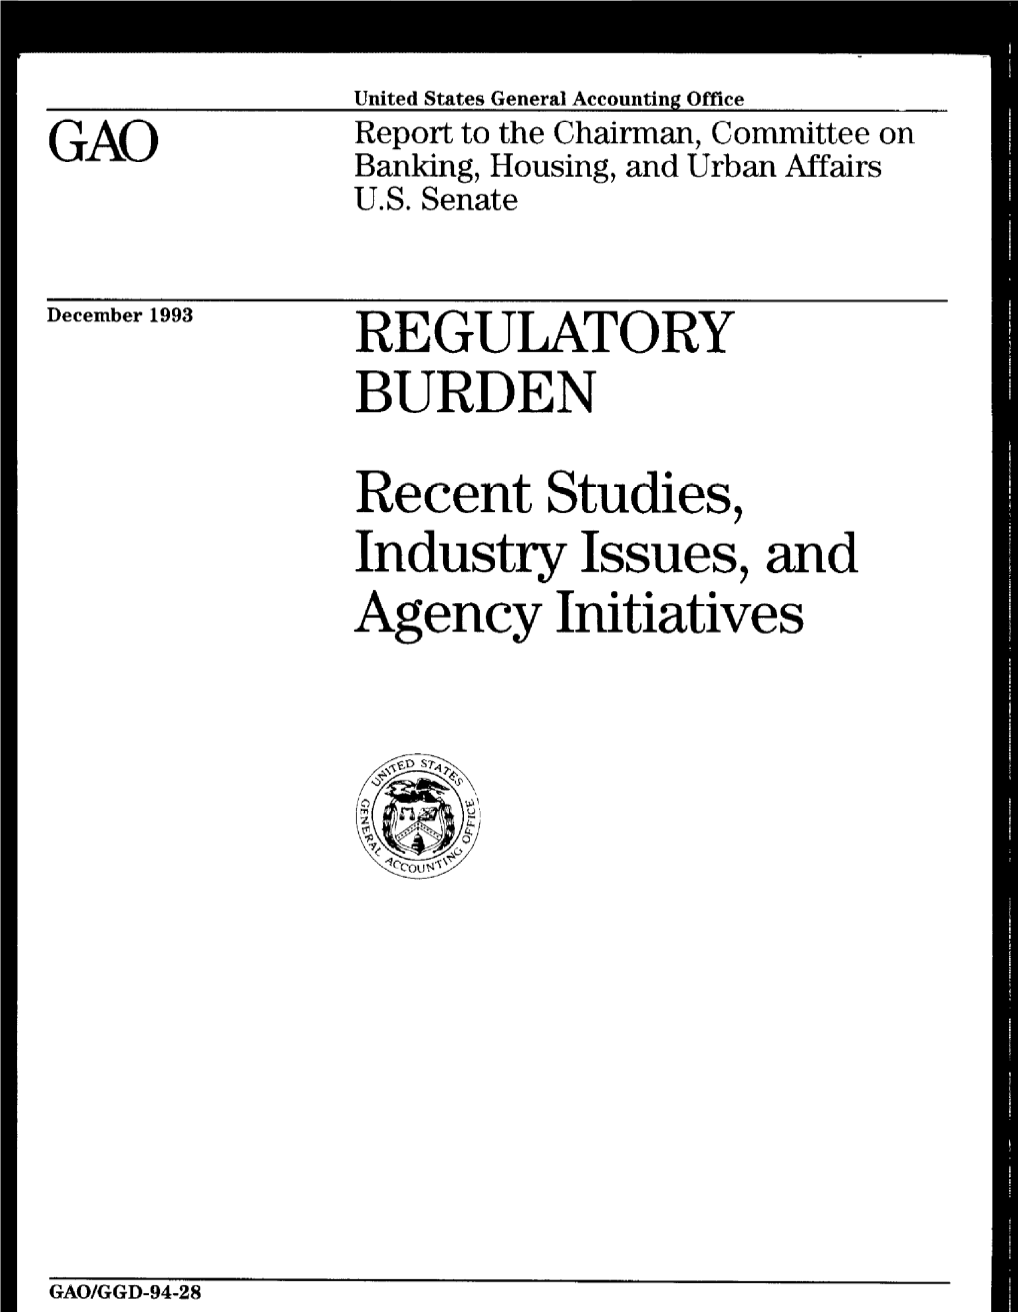 GGD-94-28 Regulatory Burden: Recent Studies, Industry Issues